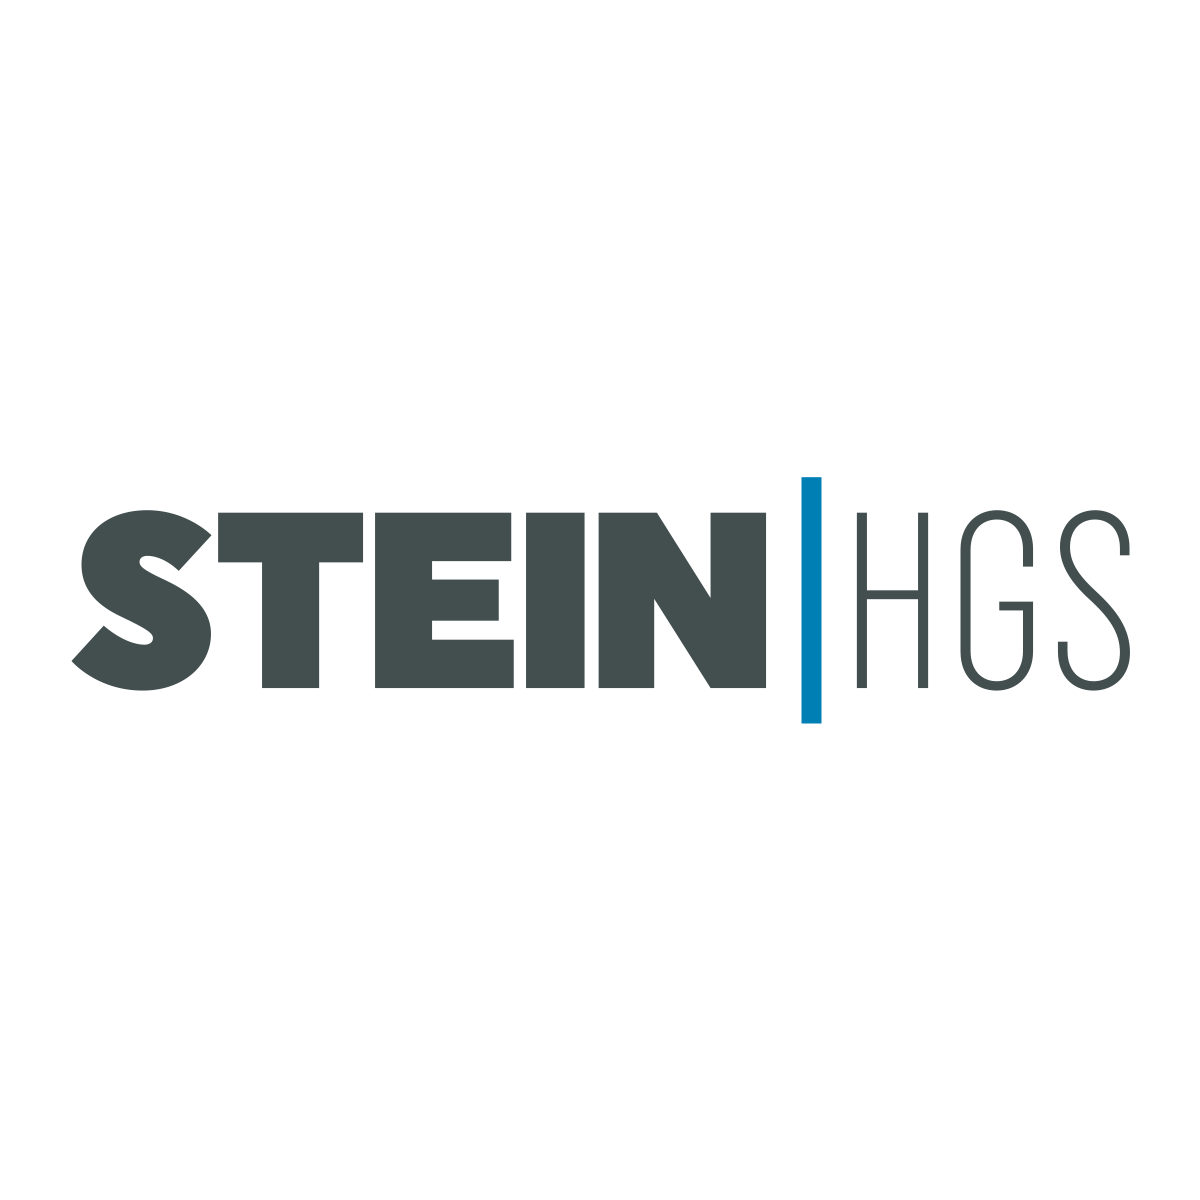 STEIN HGS GmbH